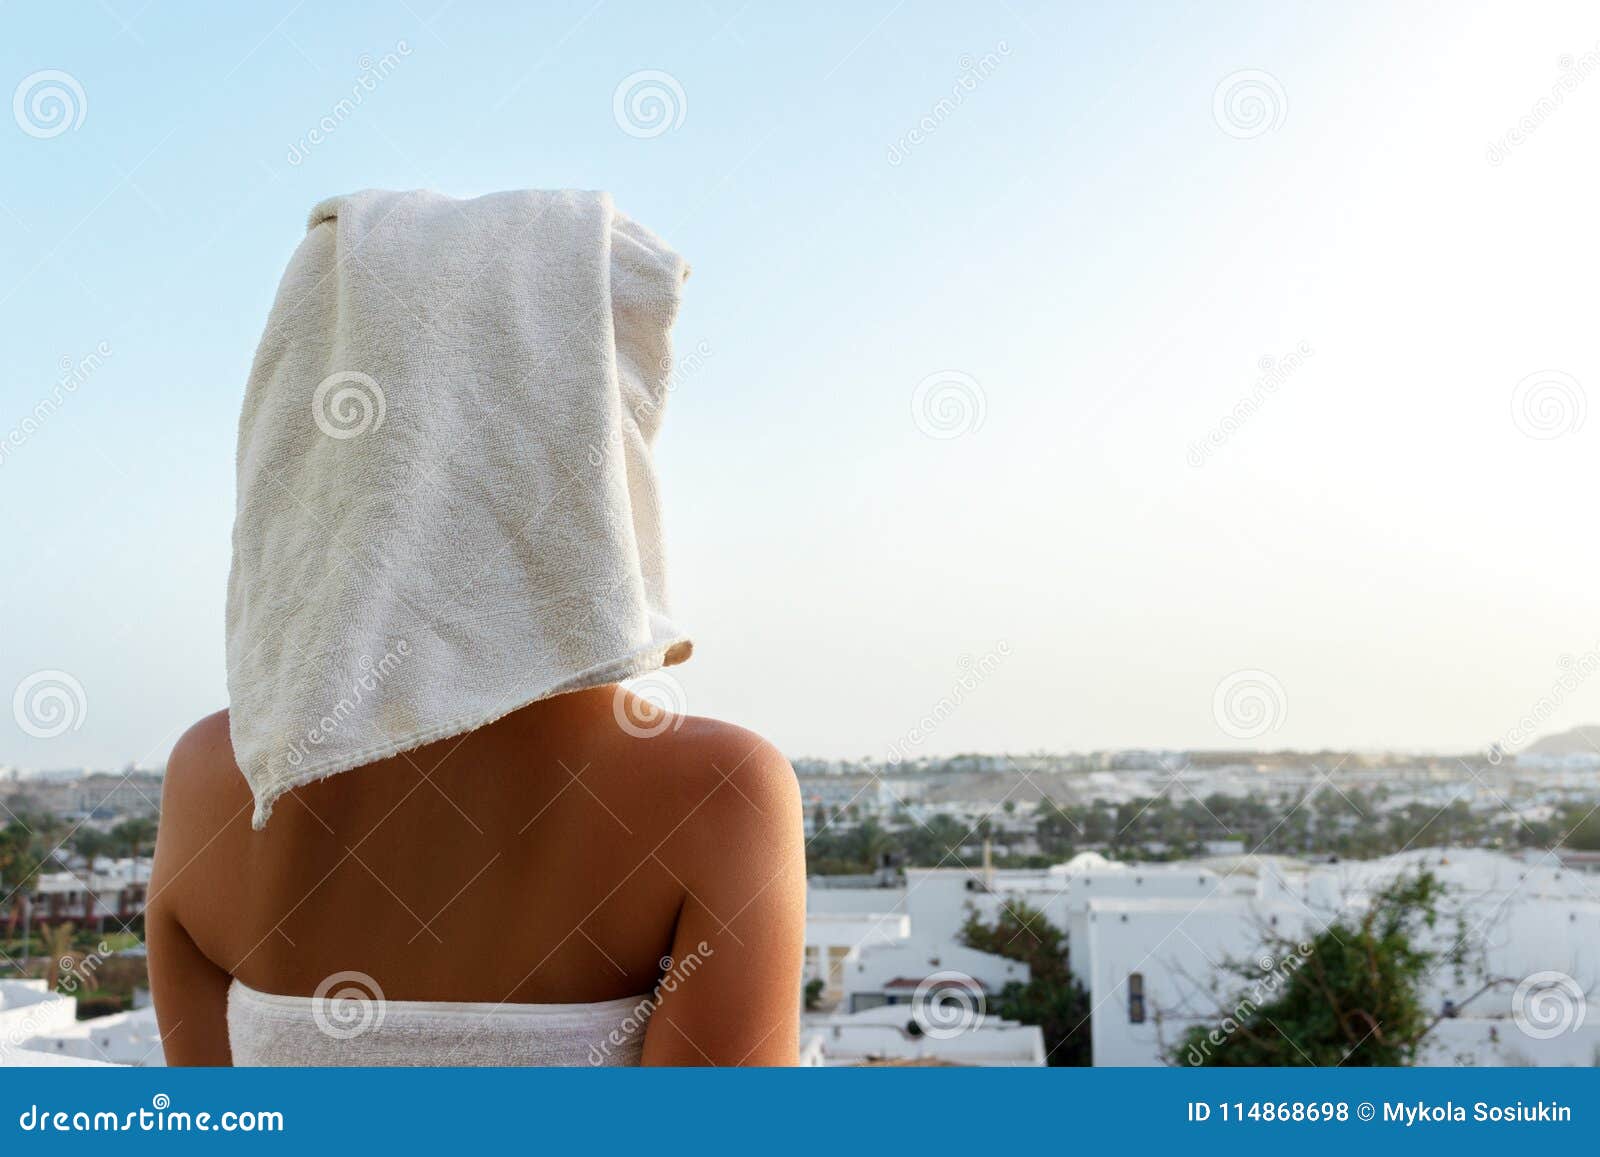 Ходит в полотенце. Девушка в полотенце со спины. Девушка с полотенцем на голове со спины. Девушка с полотенцем на голове.